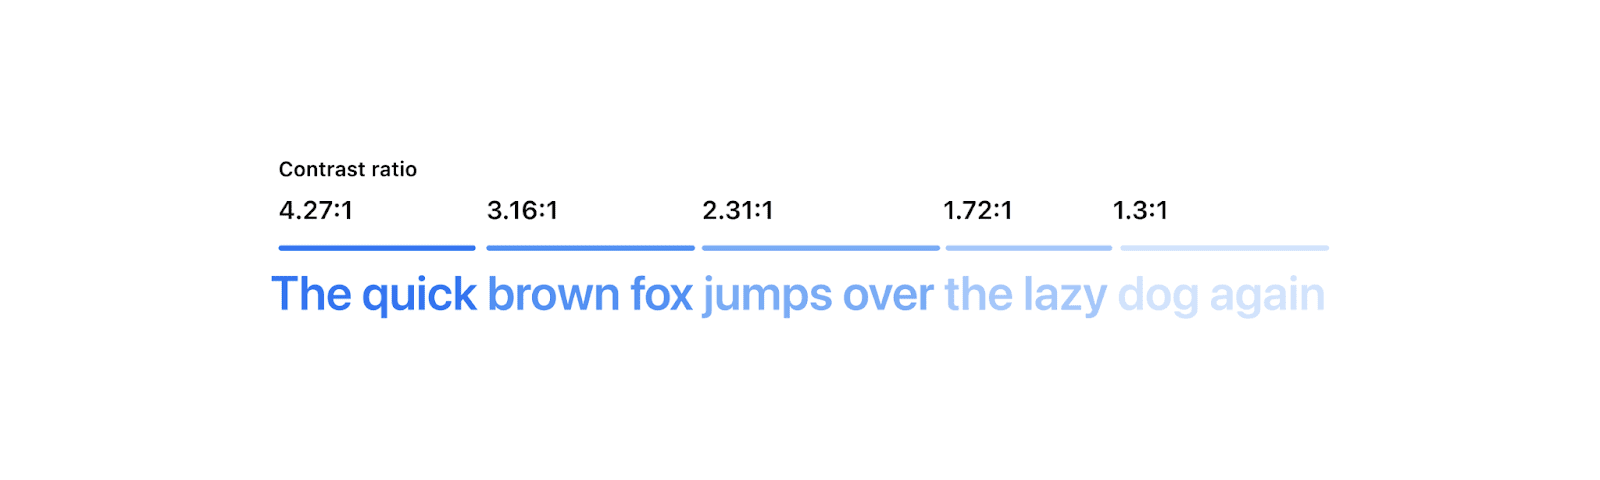 顯示「快的棕色狐狸再次跳上漂亮的狗」這個字，其中每個字或字的都較為淺藍色。逐步淡出字詞的各個部分上方會顯示其對比率分數。由於對比度過低，因此最後幾個字非常難以閱讀。